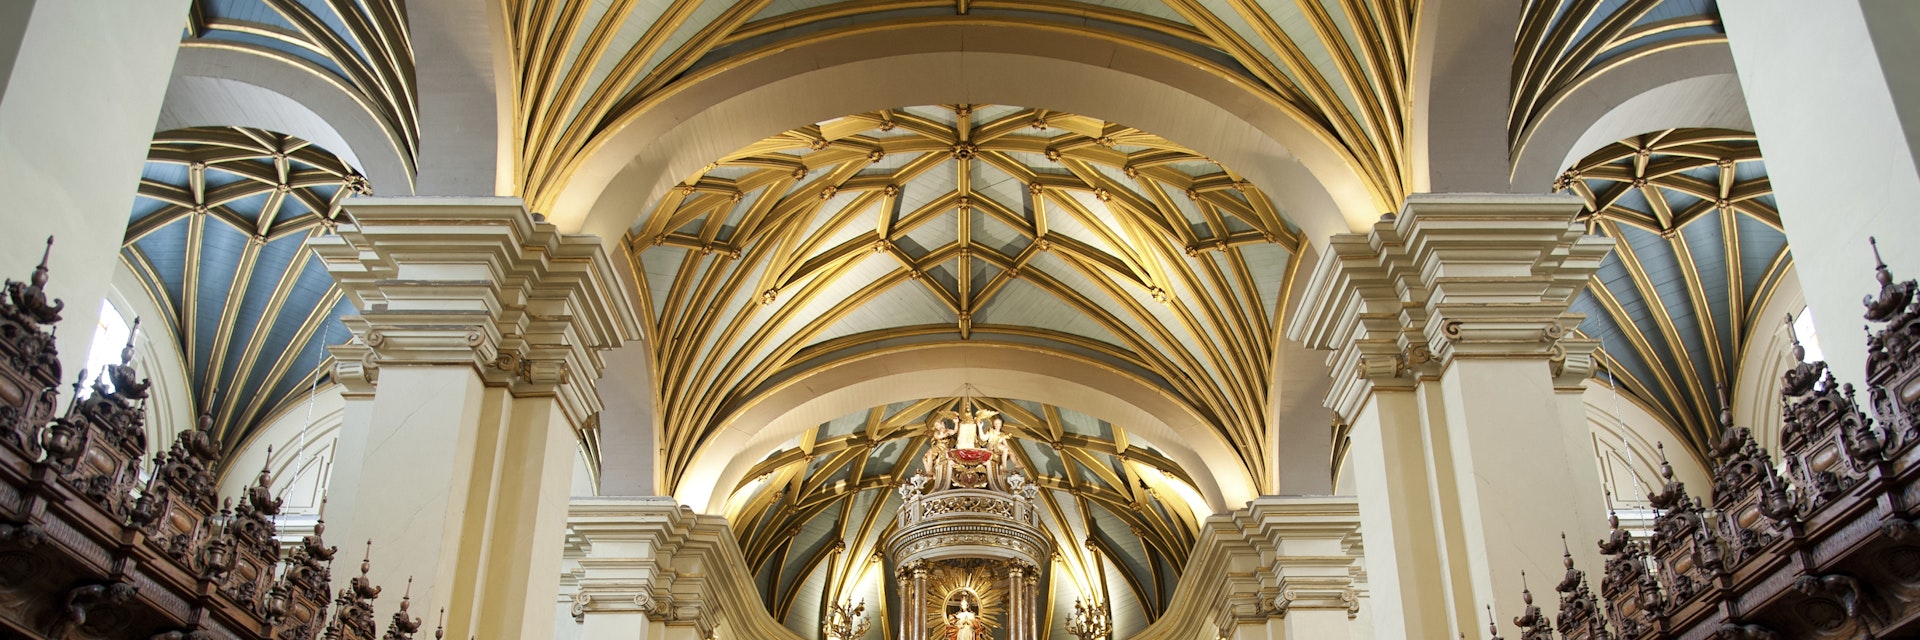 Interior of La Catedral de Lima